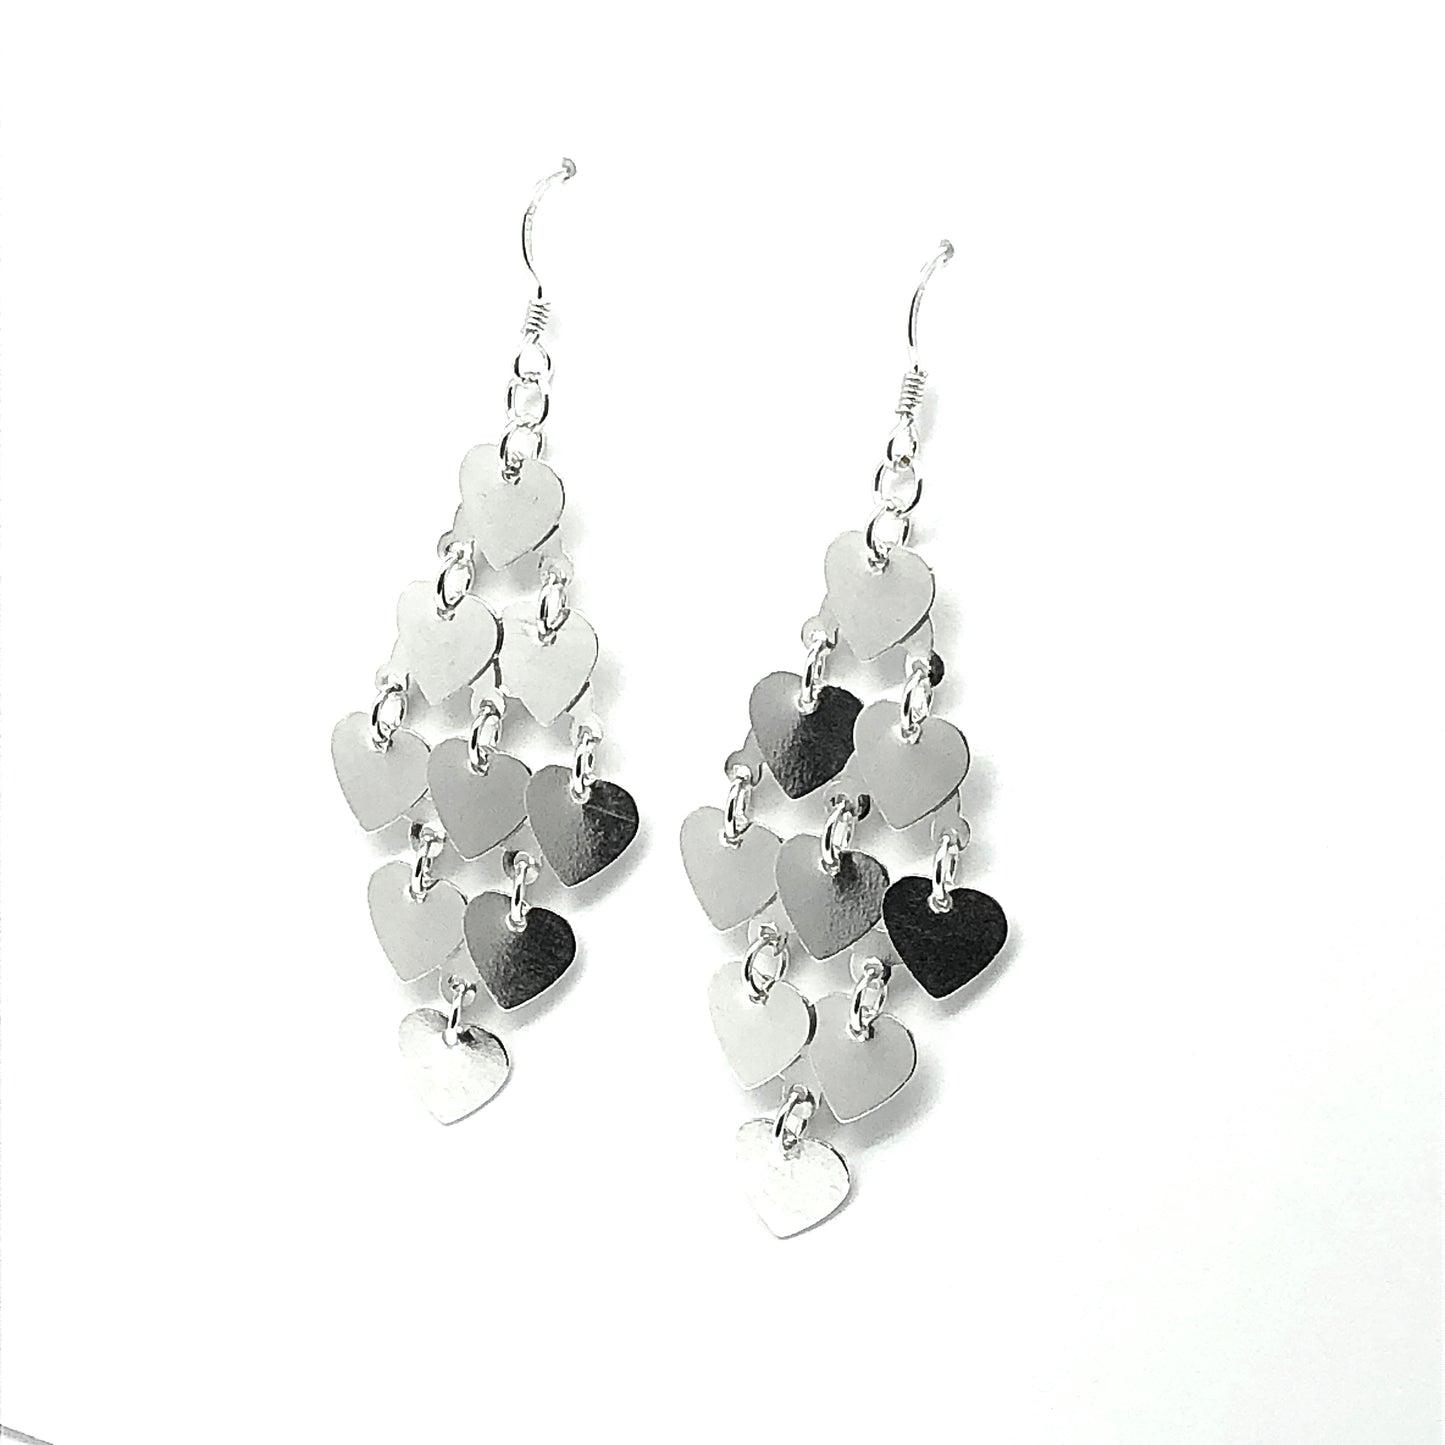 Chandelier Earrings - Womens Sterling Silver 2 5/8in Shimmering Heart Waterfall Earrings - Blingschlingers